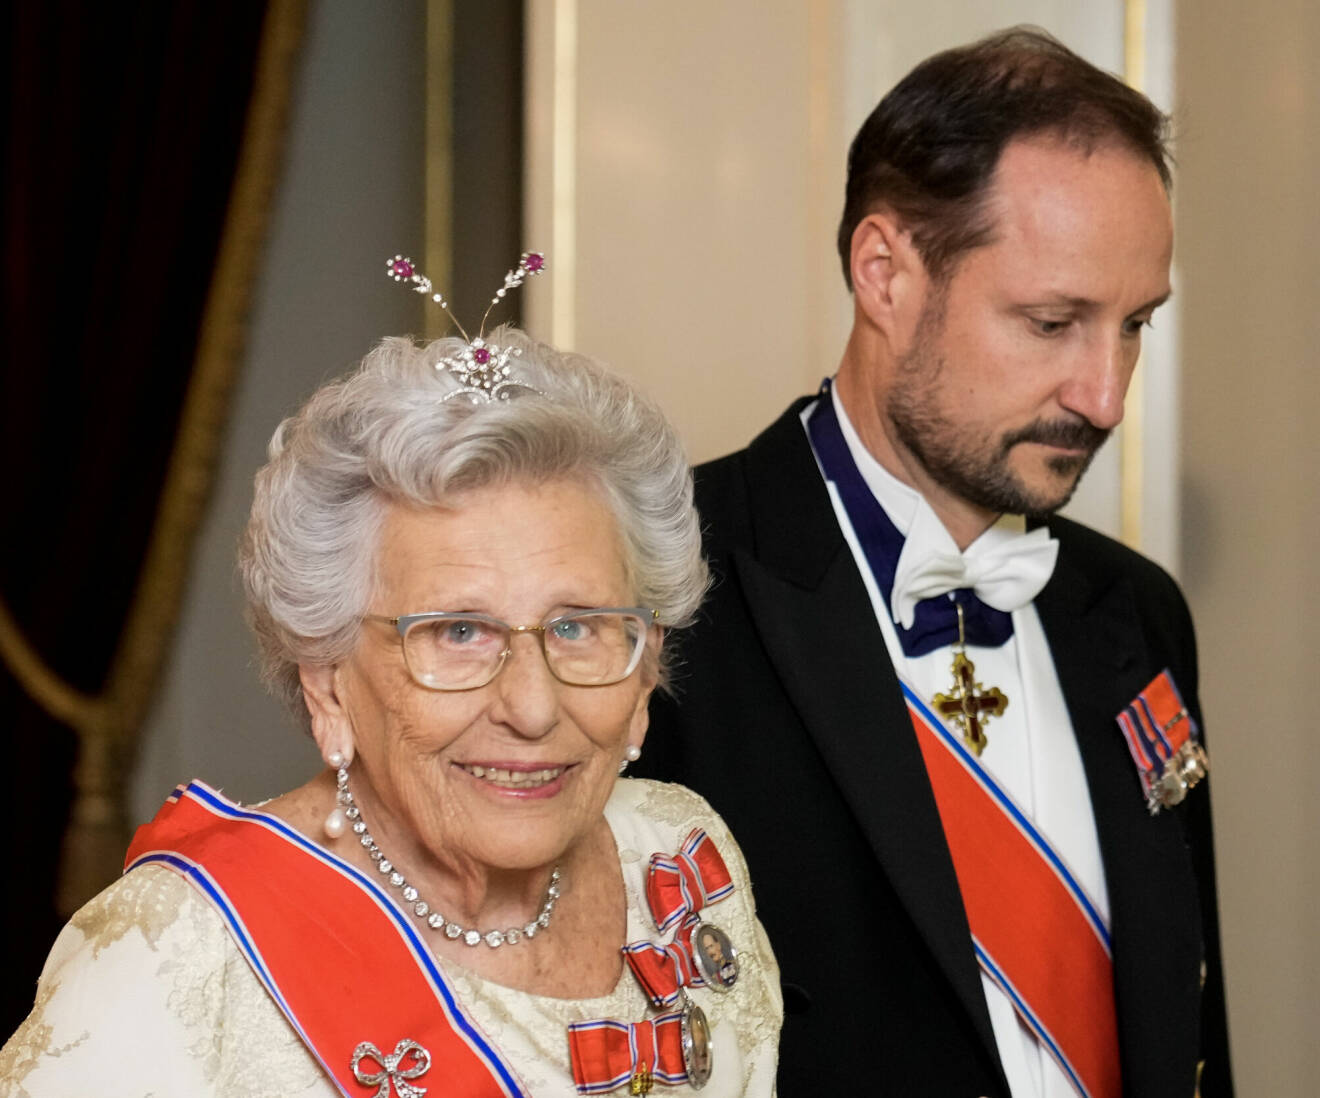 Kronprins Haakon och prinsessan Astrid på galamiddag på Kungliga slottet i Oslo